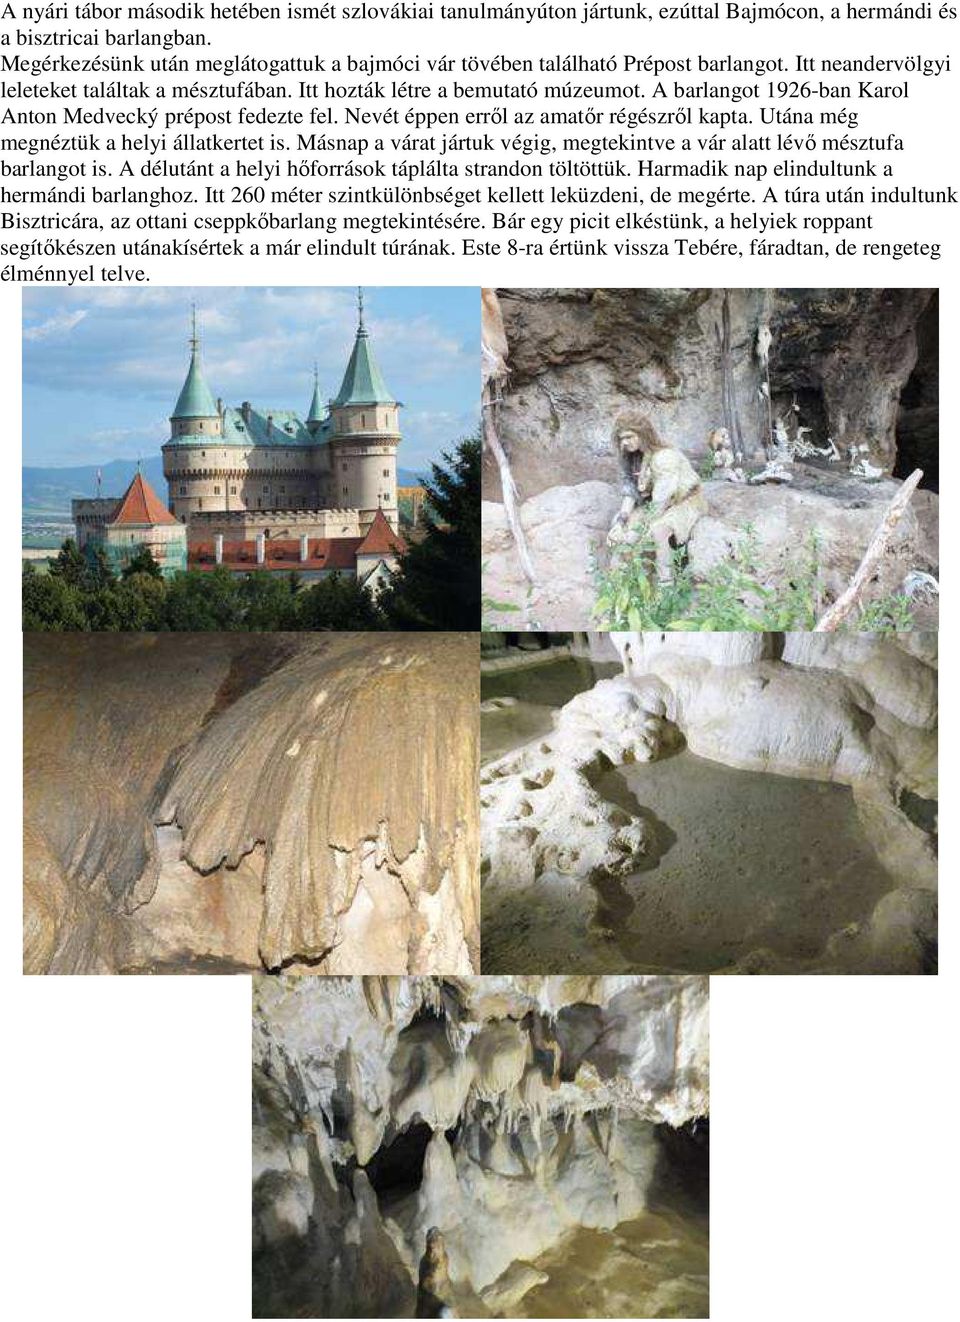 A barlangot 1926-ban Karol Anton Medvecký prépost fedezte fel. Nevét éppen erről az amatőr régészről kapta. Utána még megnéztük a helyi állatkertet is.